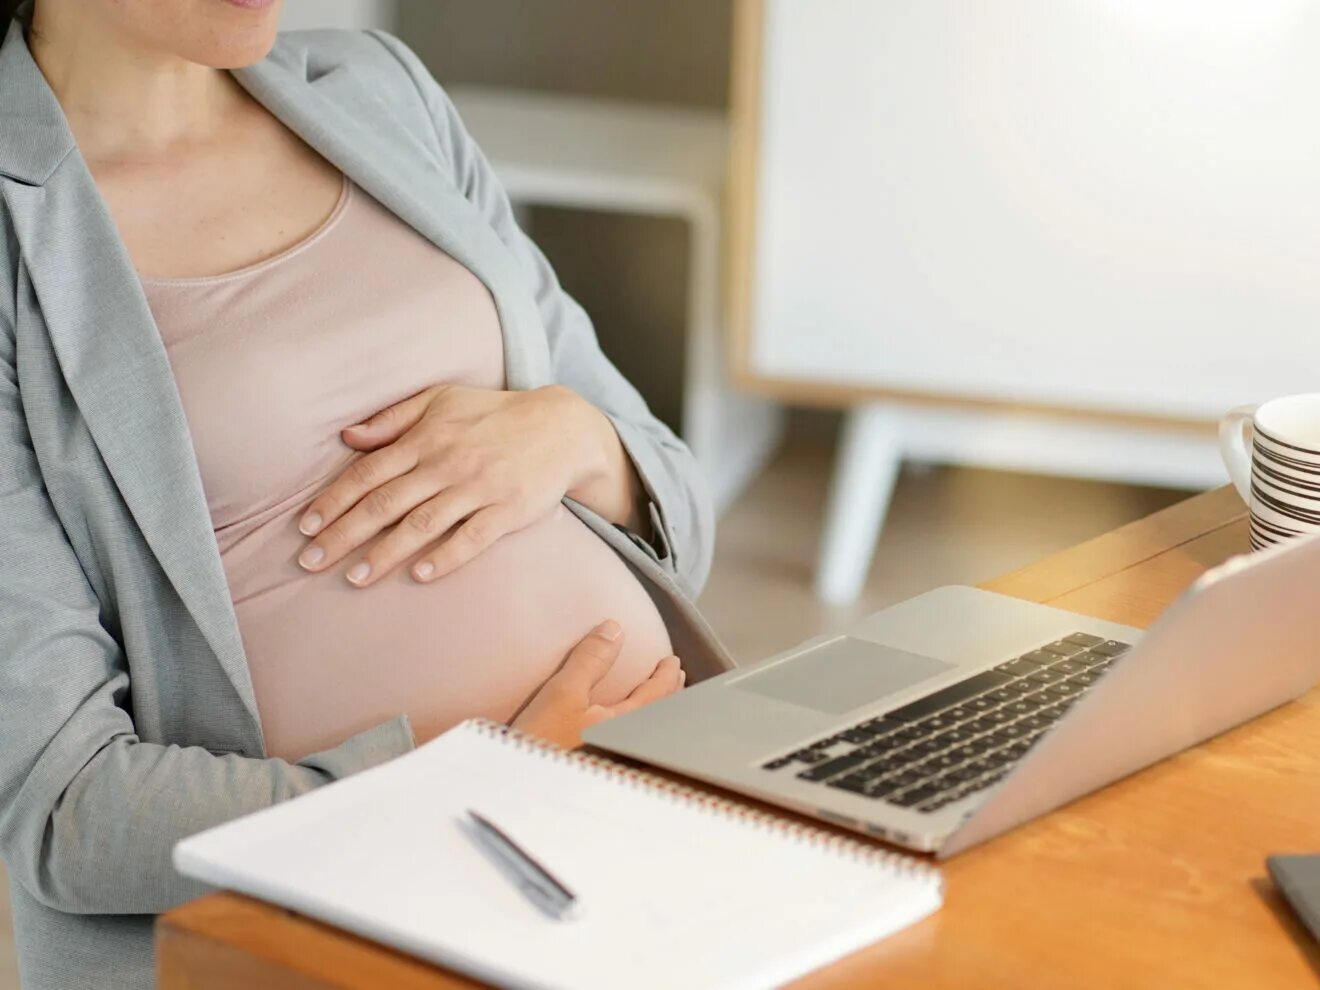 Неработающая женщина получает декретные. Пособие по беременности и родам.